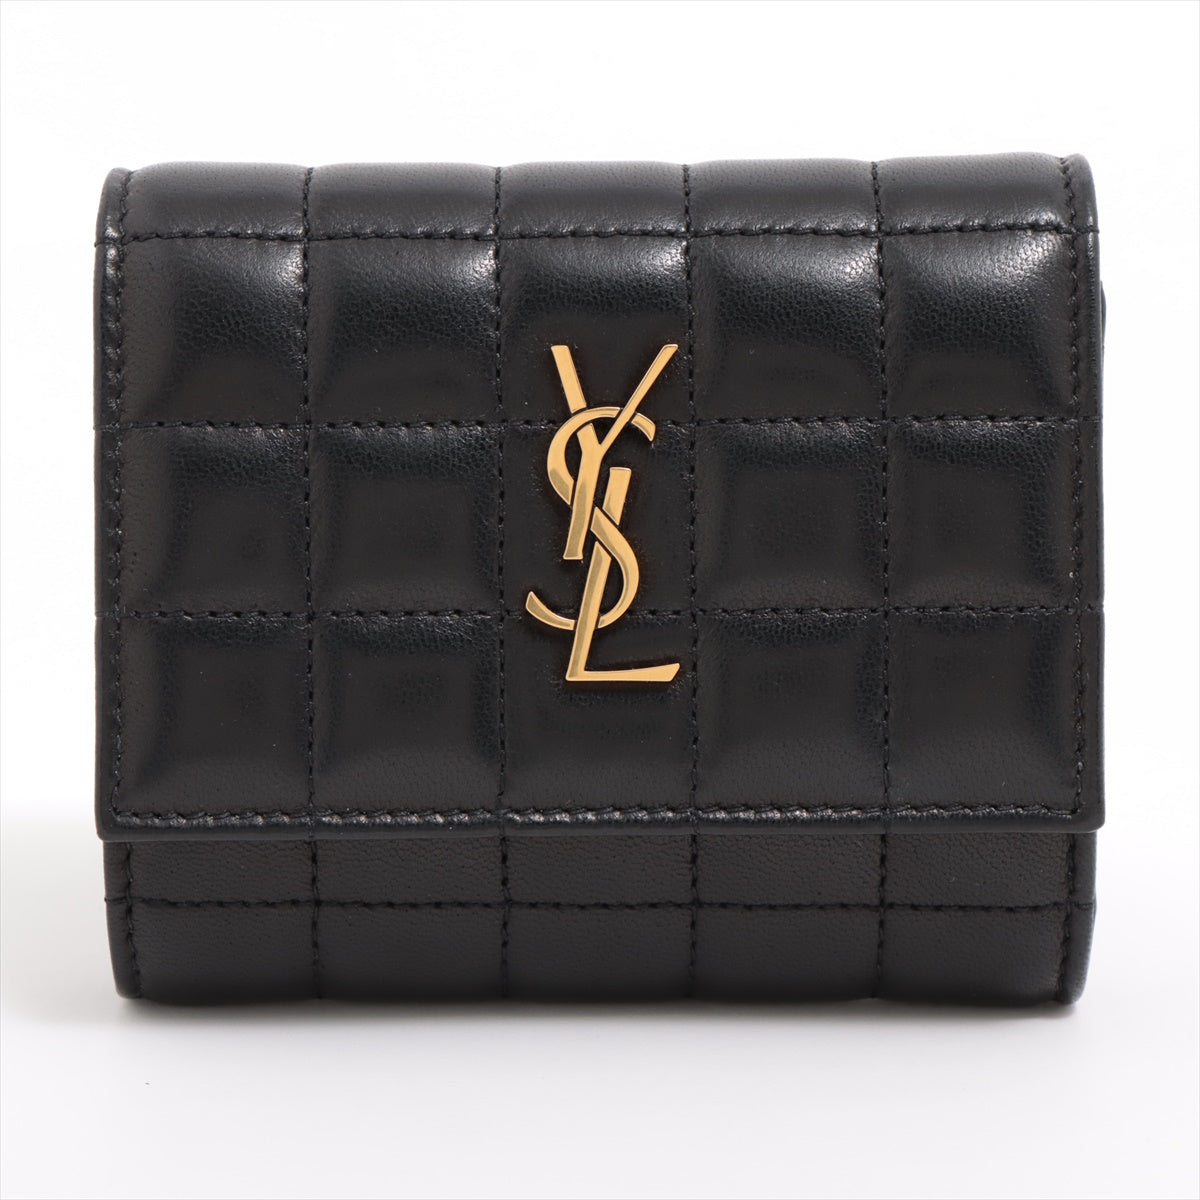 Saint Laurent Paris Leather Compact Wallet Black 759490